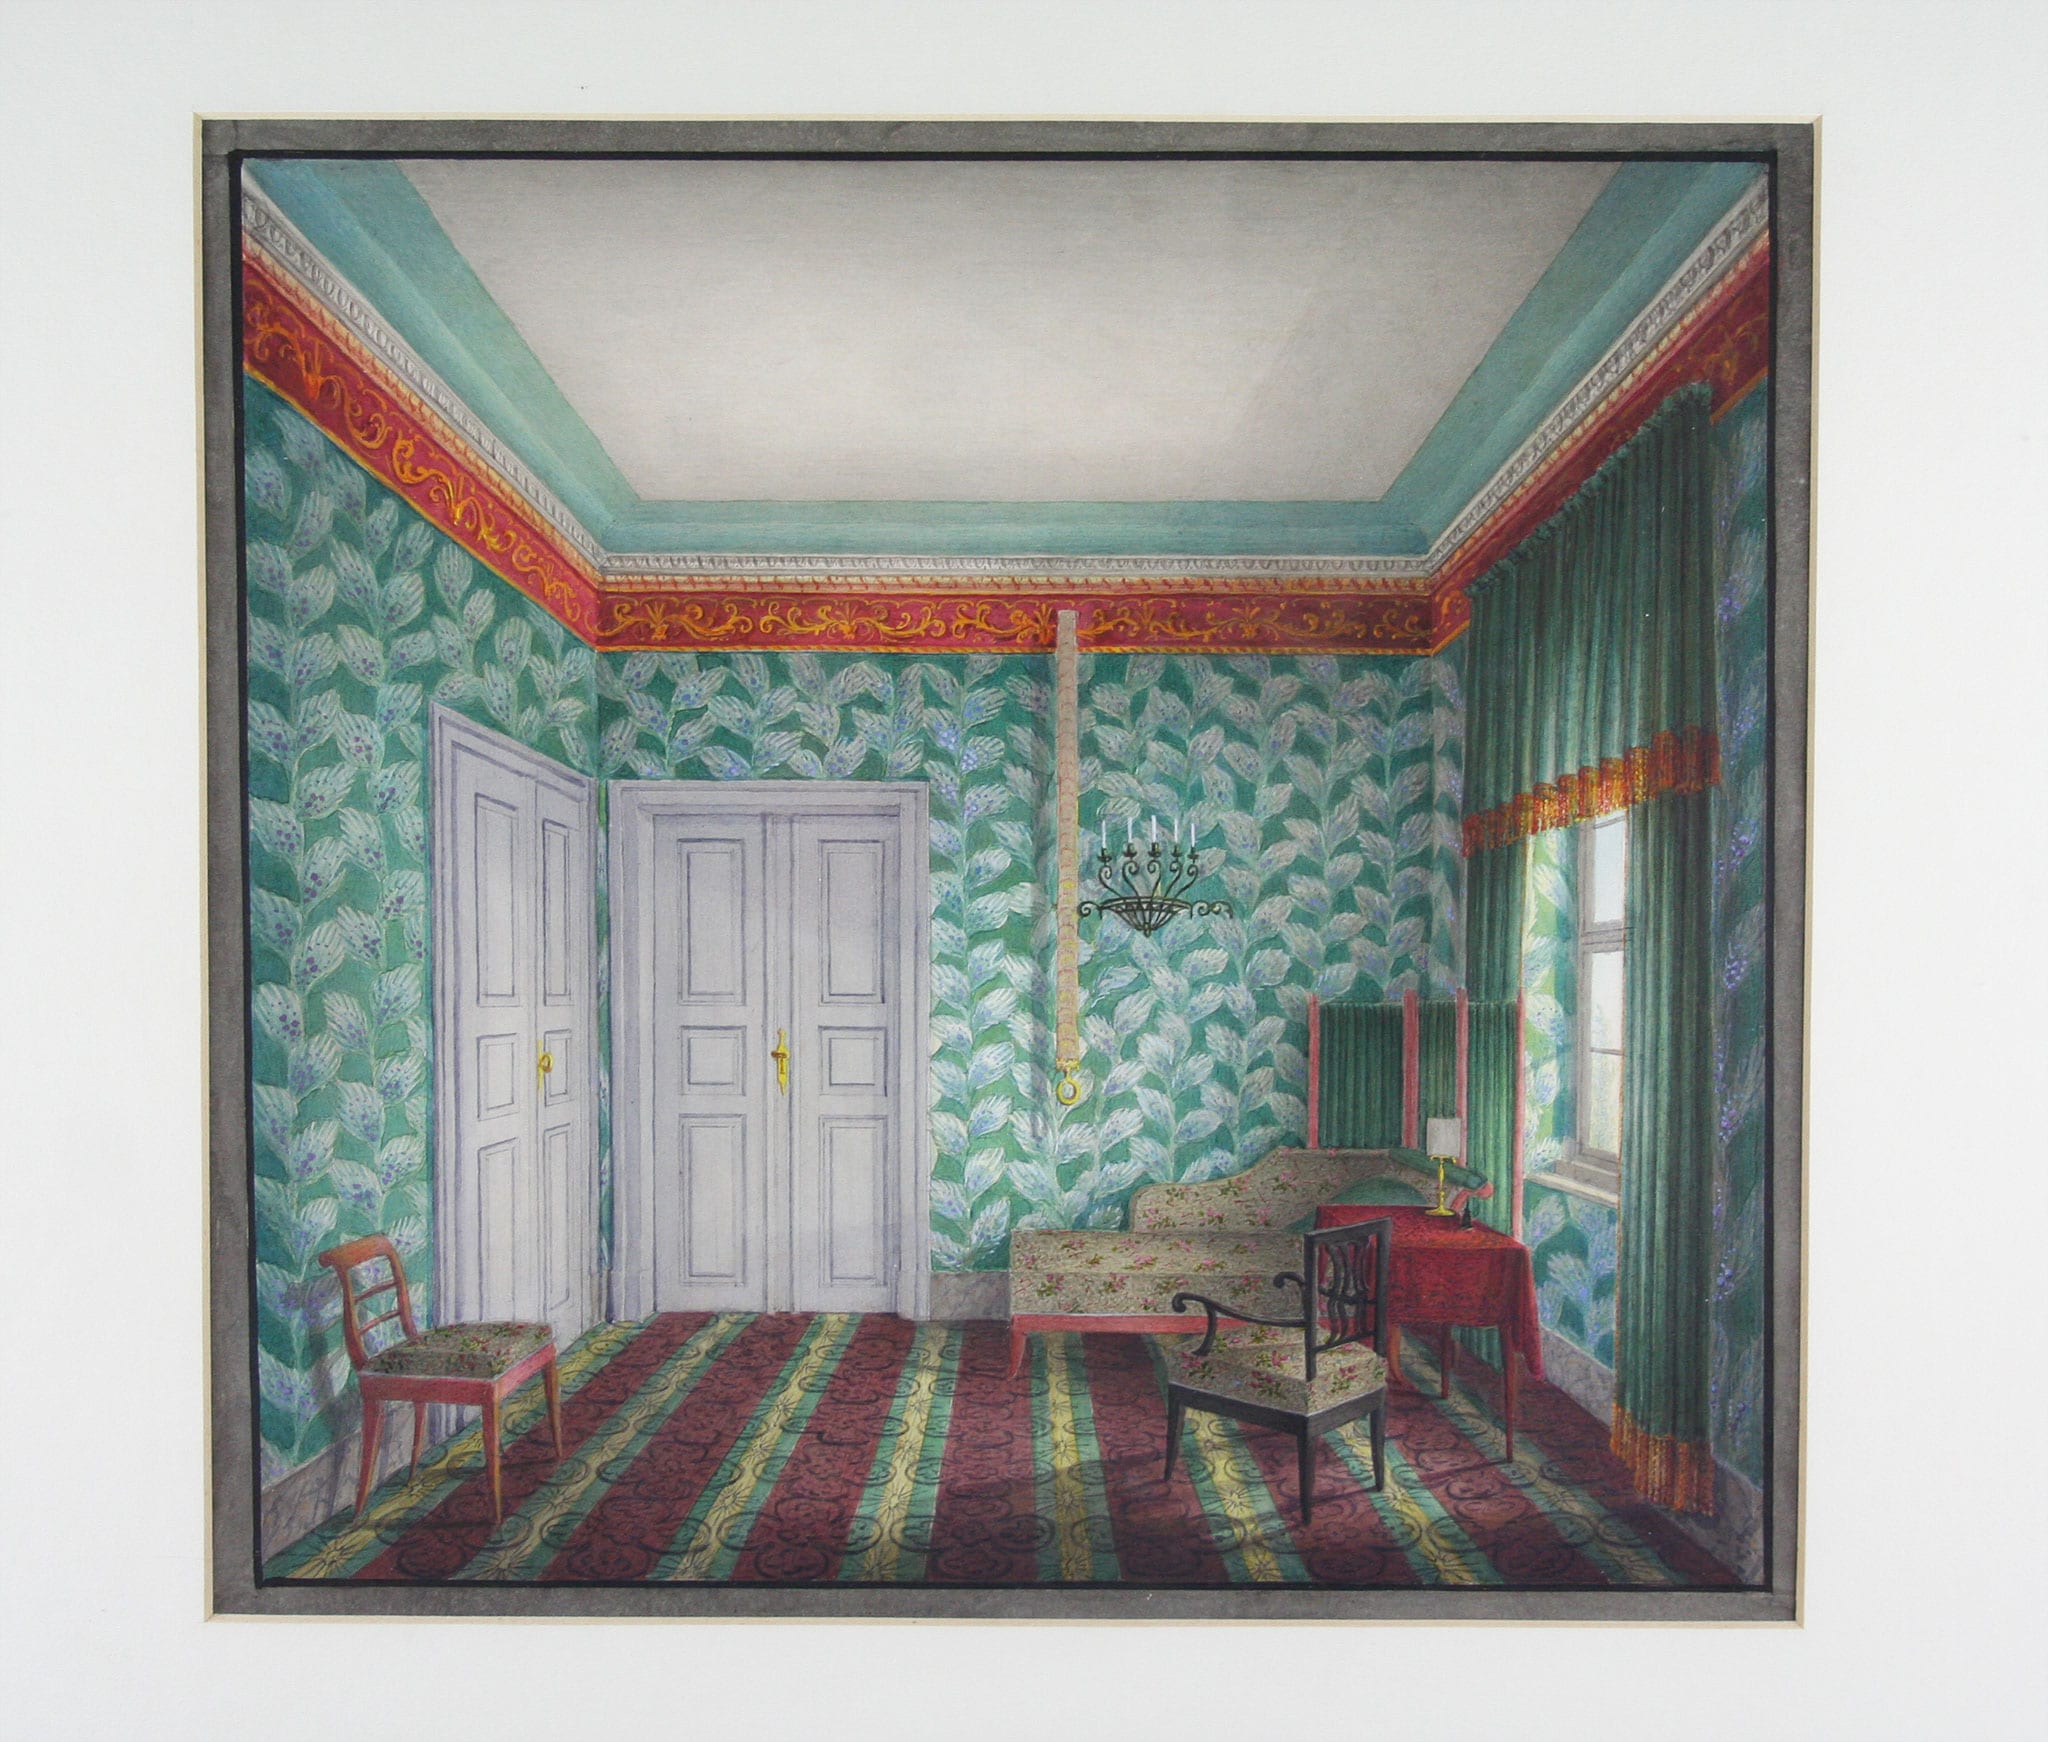 Artista austriaco“Piccola stanza di soggiorno con parato verde a fogliame” 1820-30 ca. Acquerello su carta, 28 x 29,3 cm. 